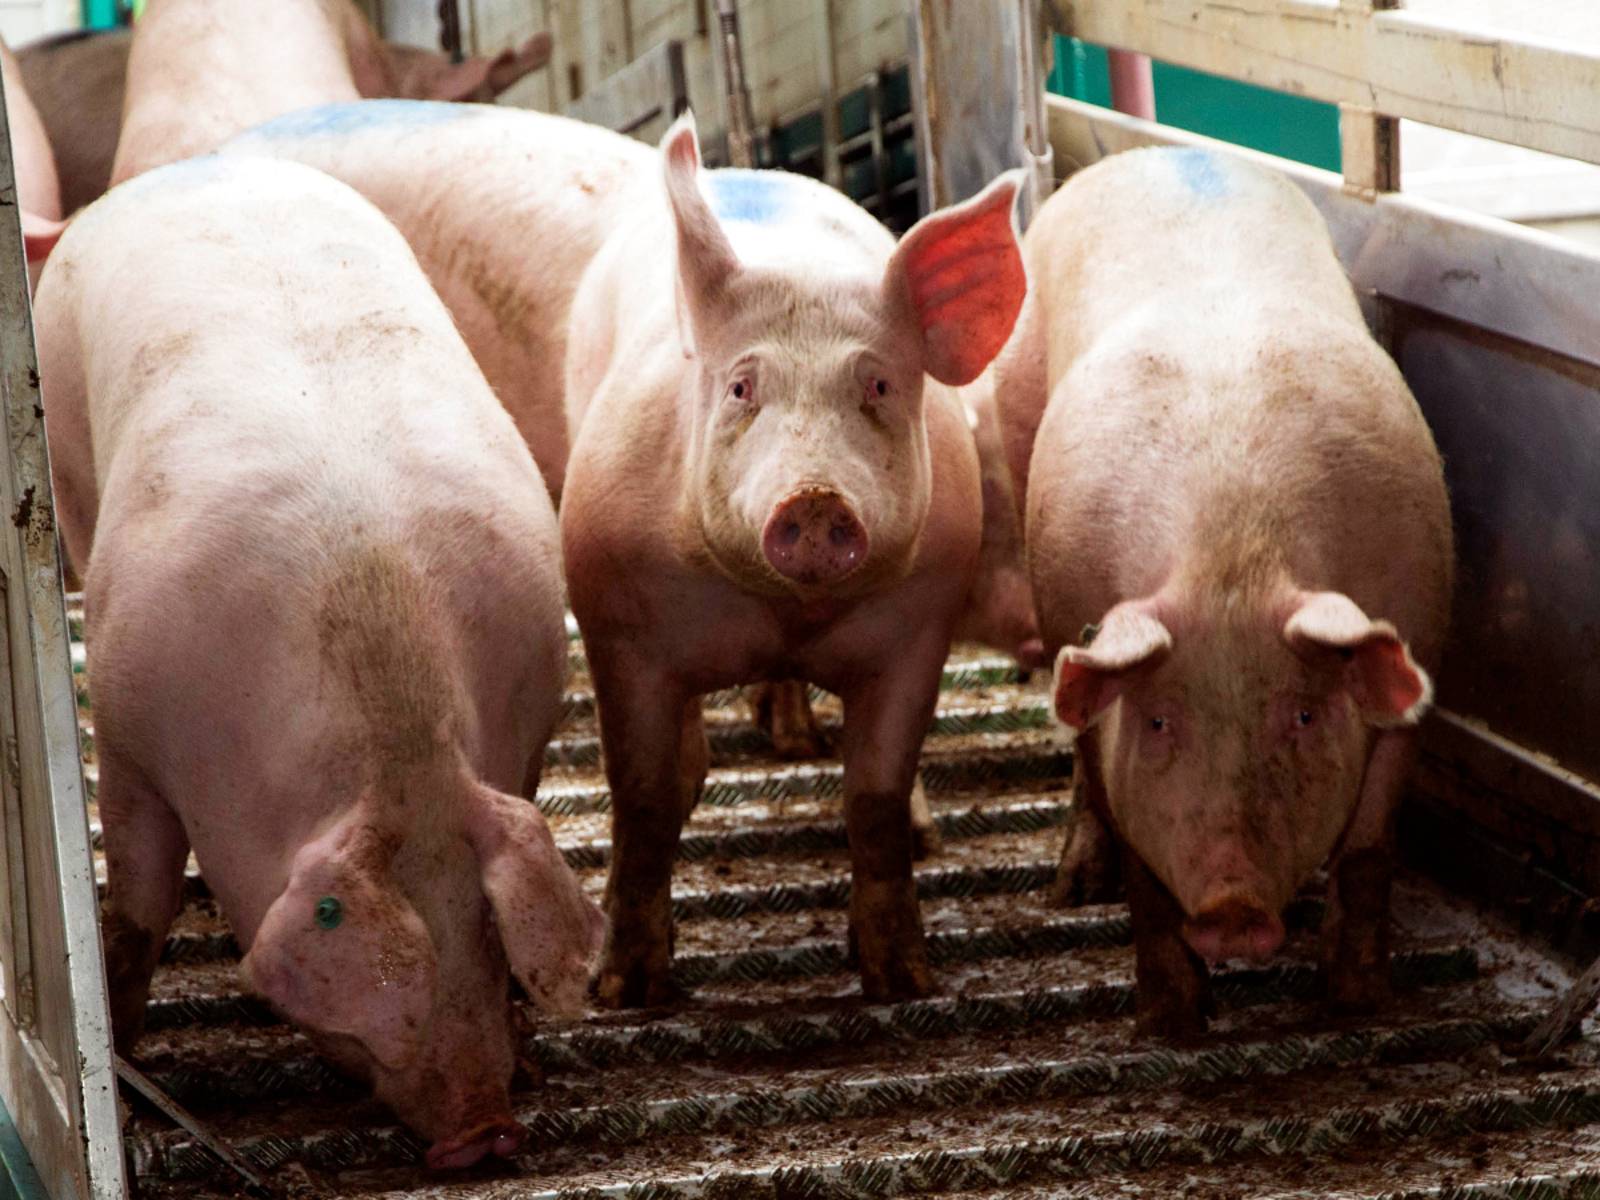 Drei Schweine stehen auf einer Rampe aus gewelltem Profilblech. Die beiden äußeren Tiere schauen nach unten, das mittlere Schwein blickt in die Kamera.